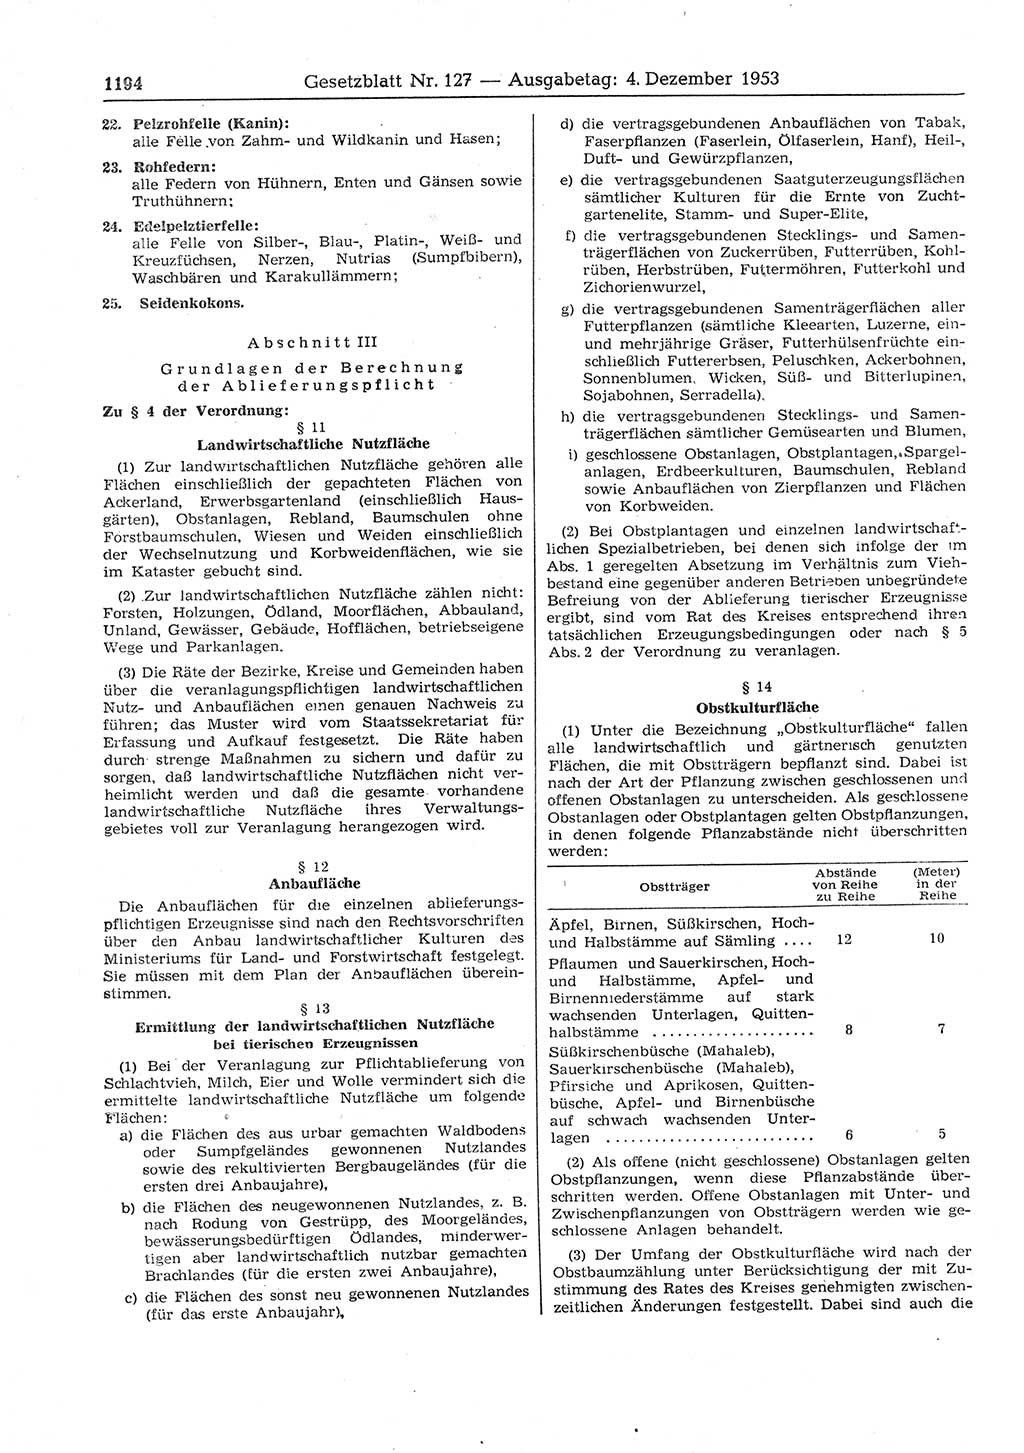 Gesetzblatt (GBl.) der Deutschen Demokratischen Republik (DDR) 1953, Seite 1194 (GBl. DDR 1953, S. 1194)